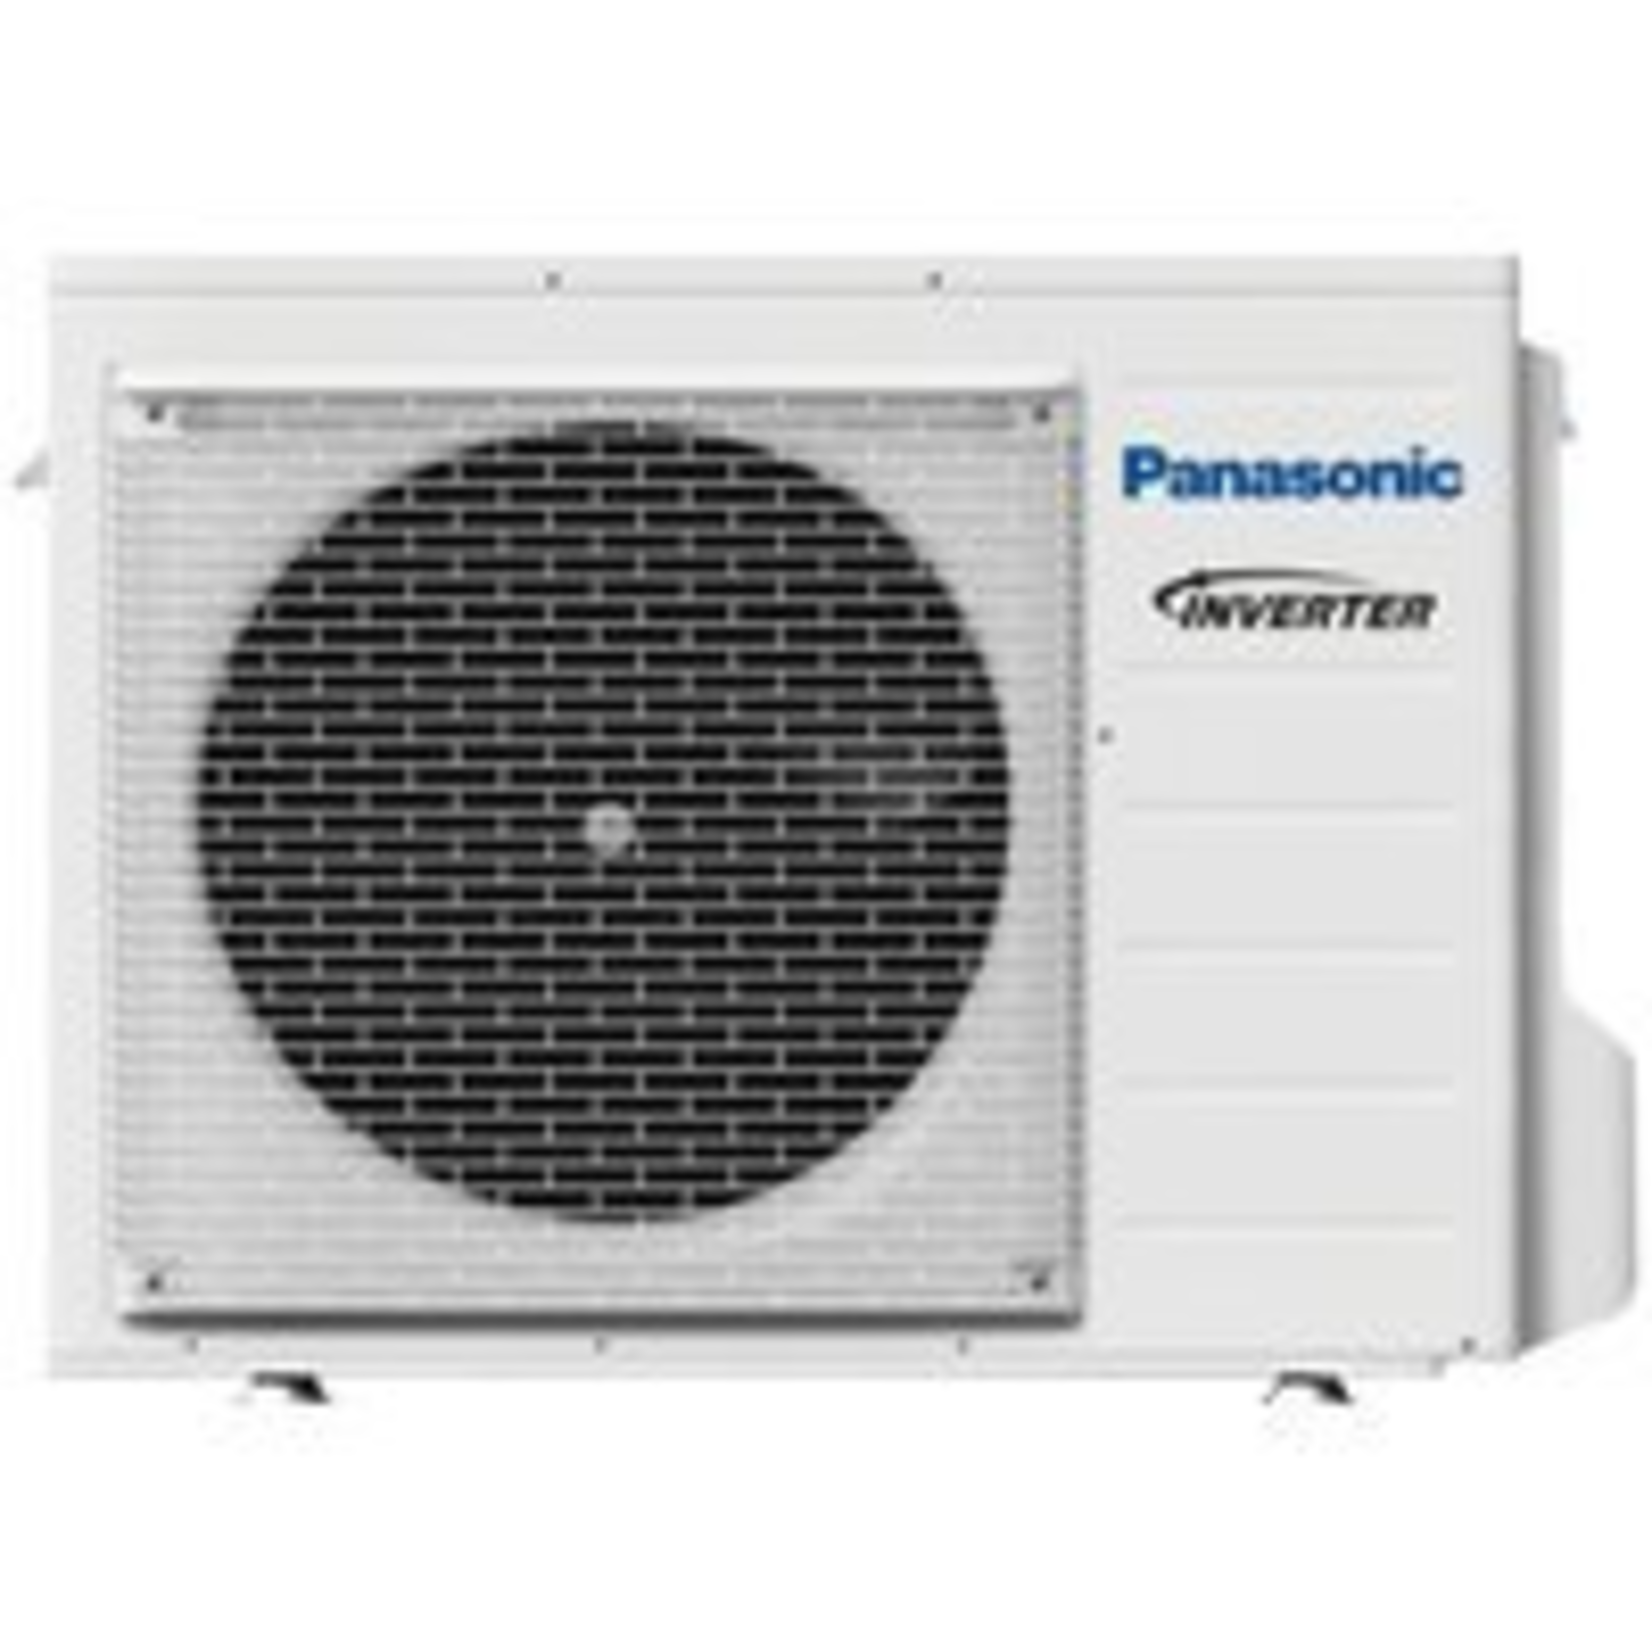 Panasonic Klimaanlage Split Set Set mit Rastermaß-Kassette Baureihe UB4 5 kW